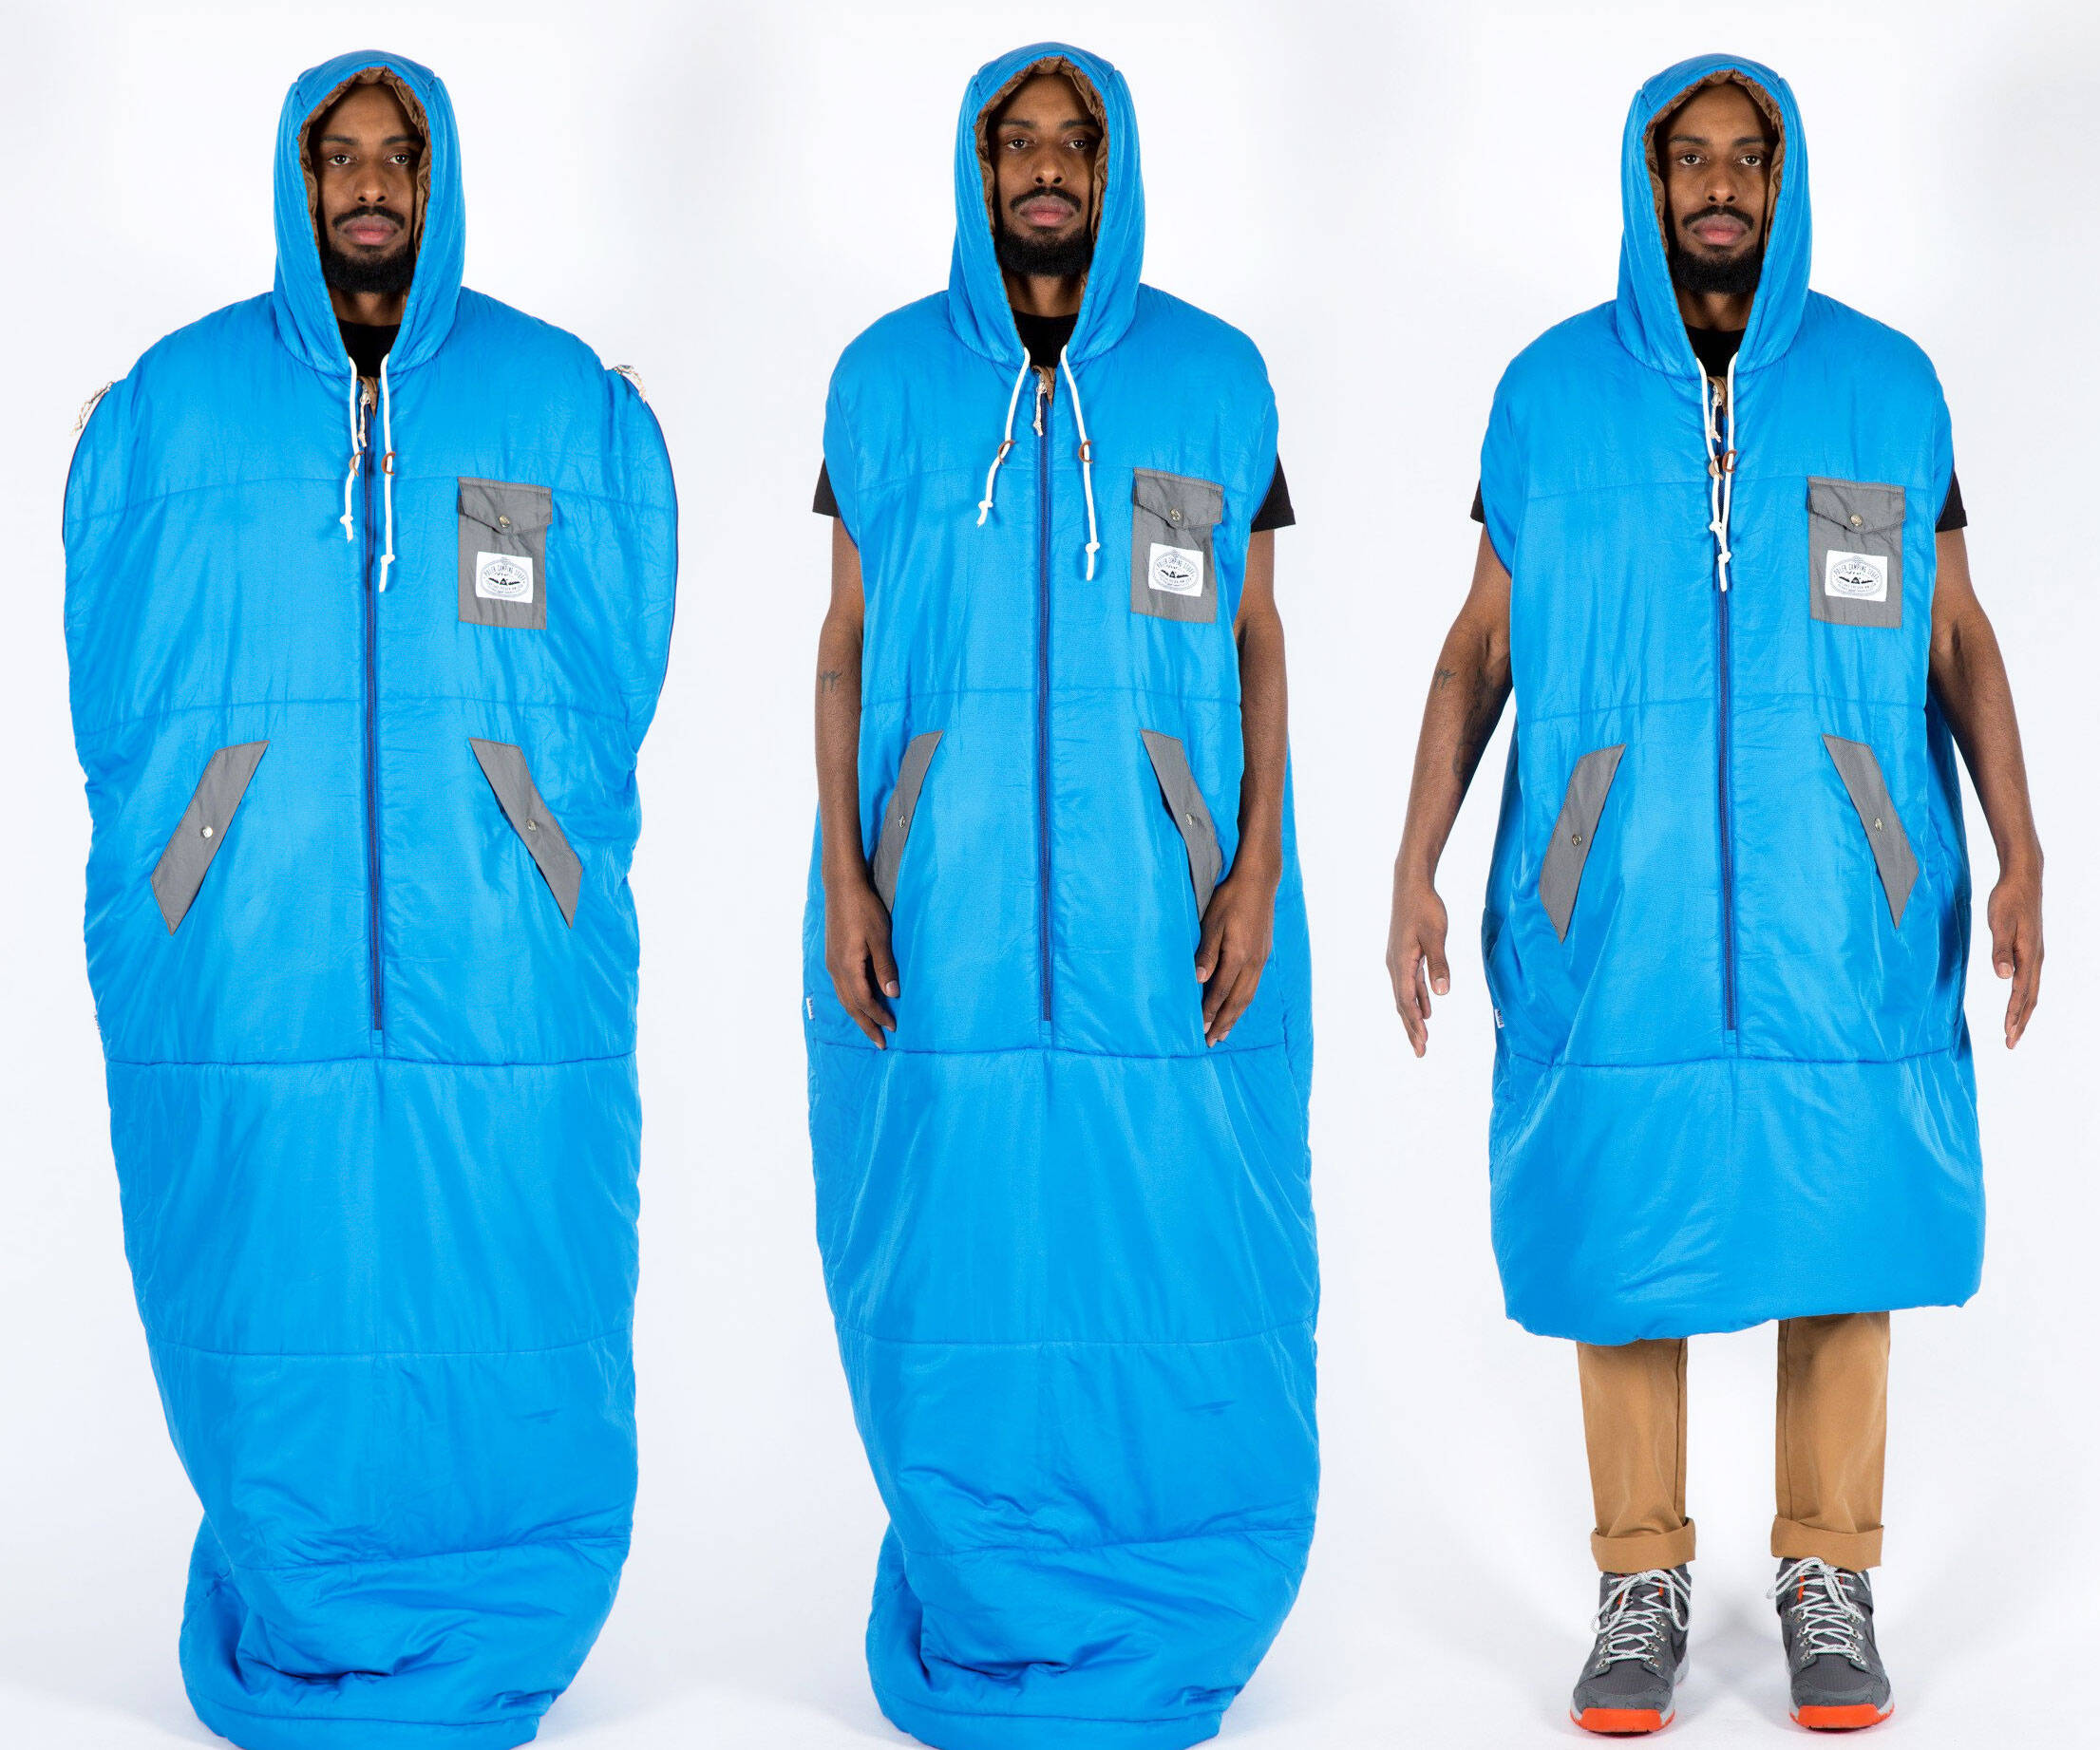 Napsack Wearable Sleeping Bag - coolthings.us